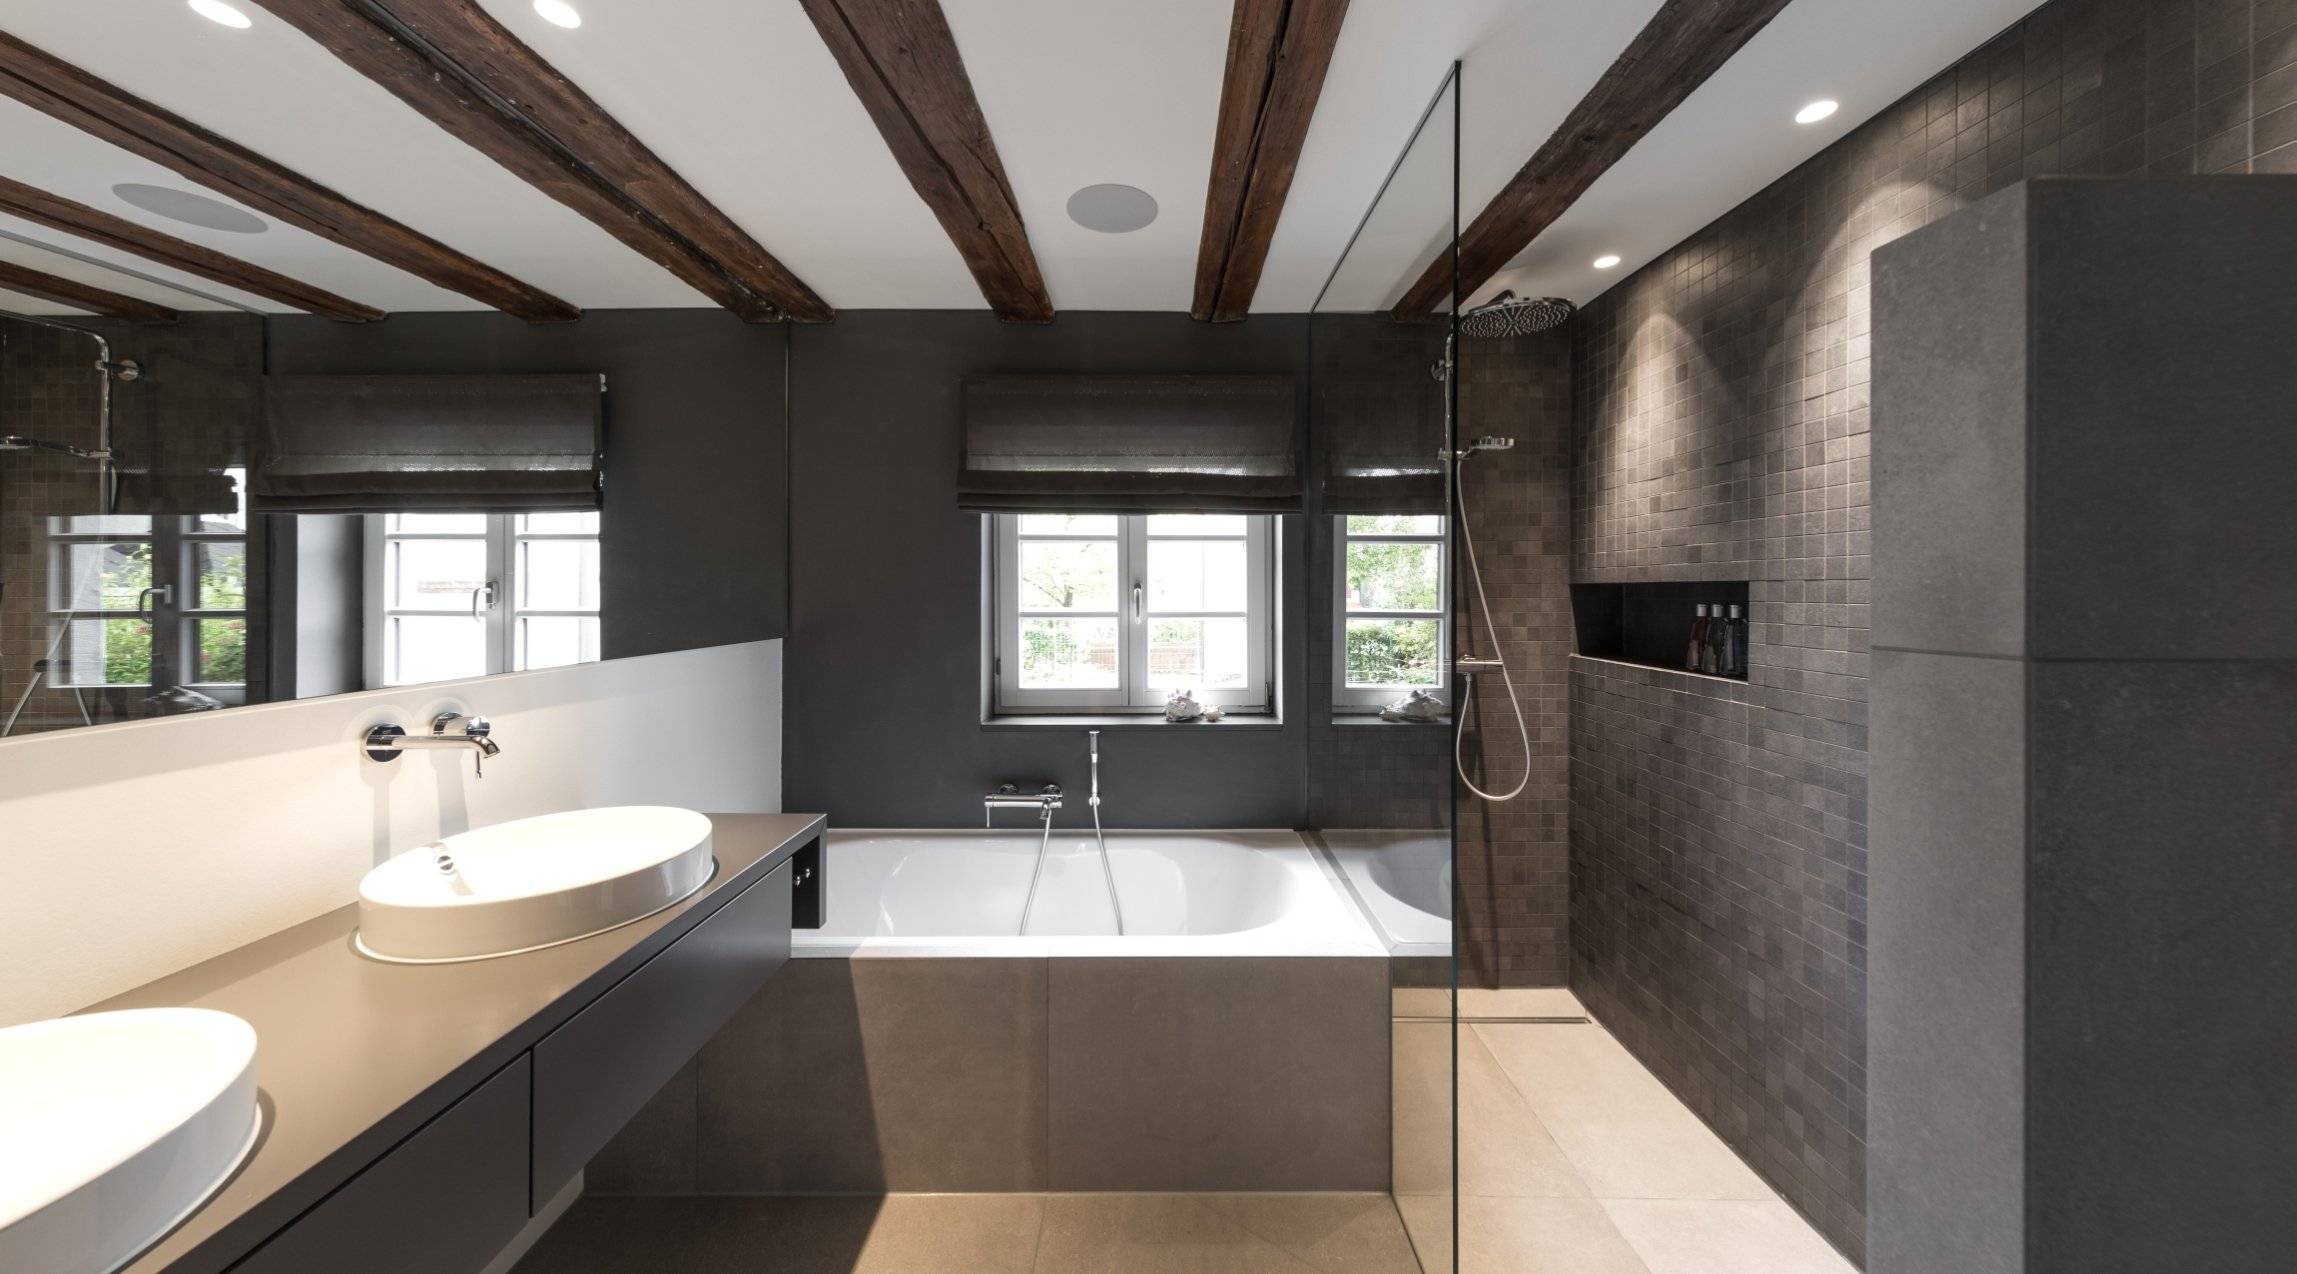 Из чего сделать потолок в ванной комнате: какой лучше выбрать материал, фото, видео